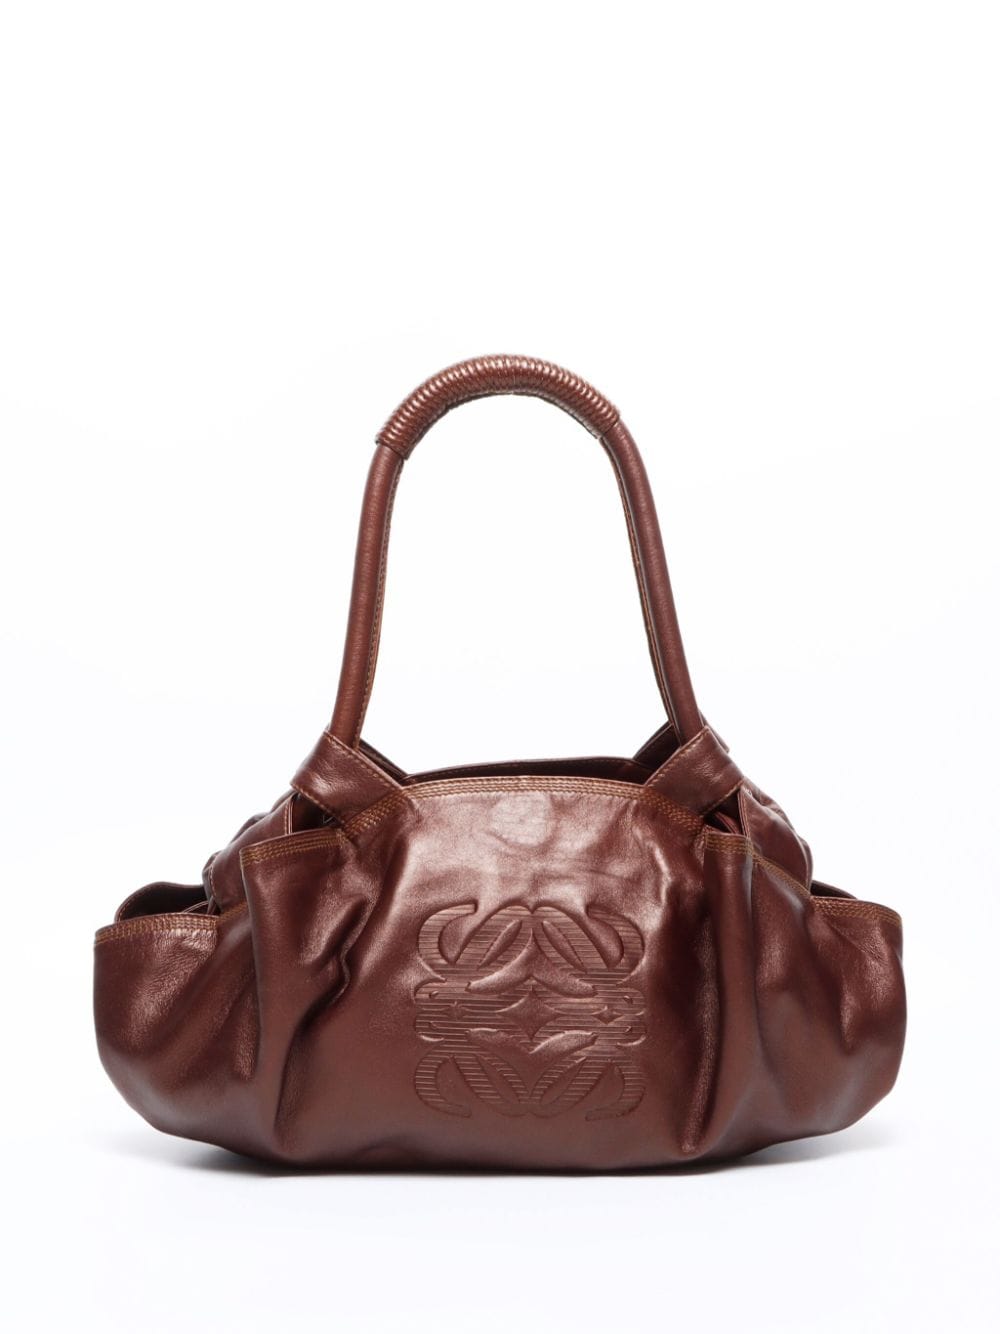 Loewe Pre-Owned Anagram-debossed leather handbag - Marrone